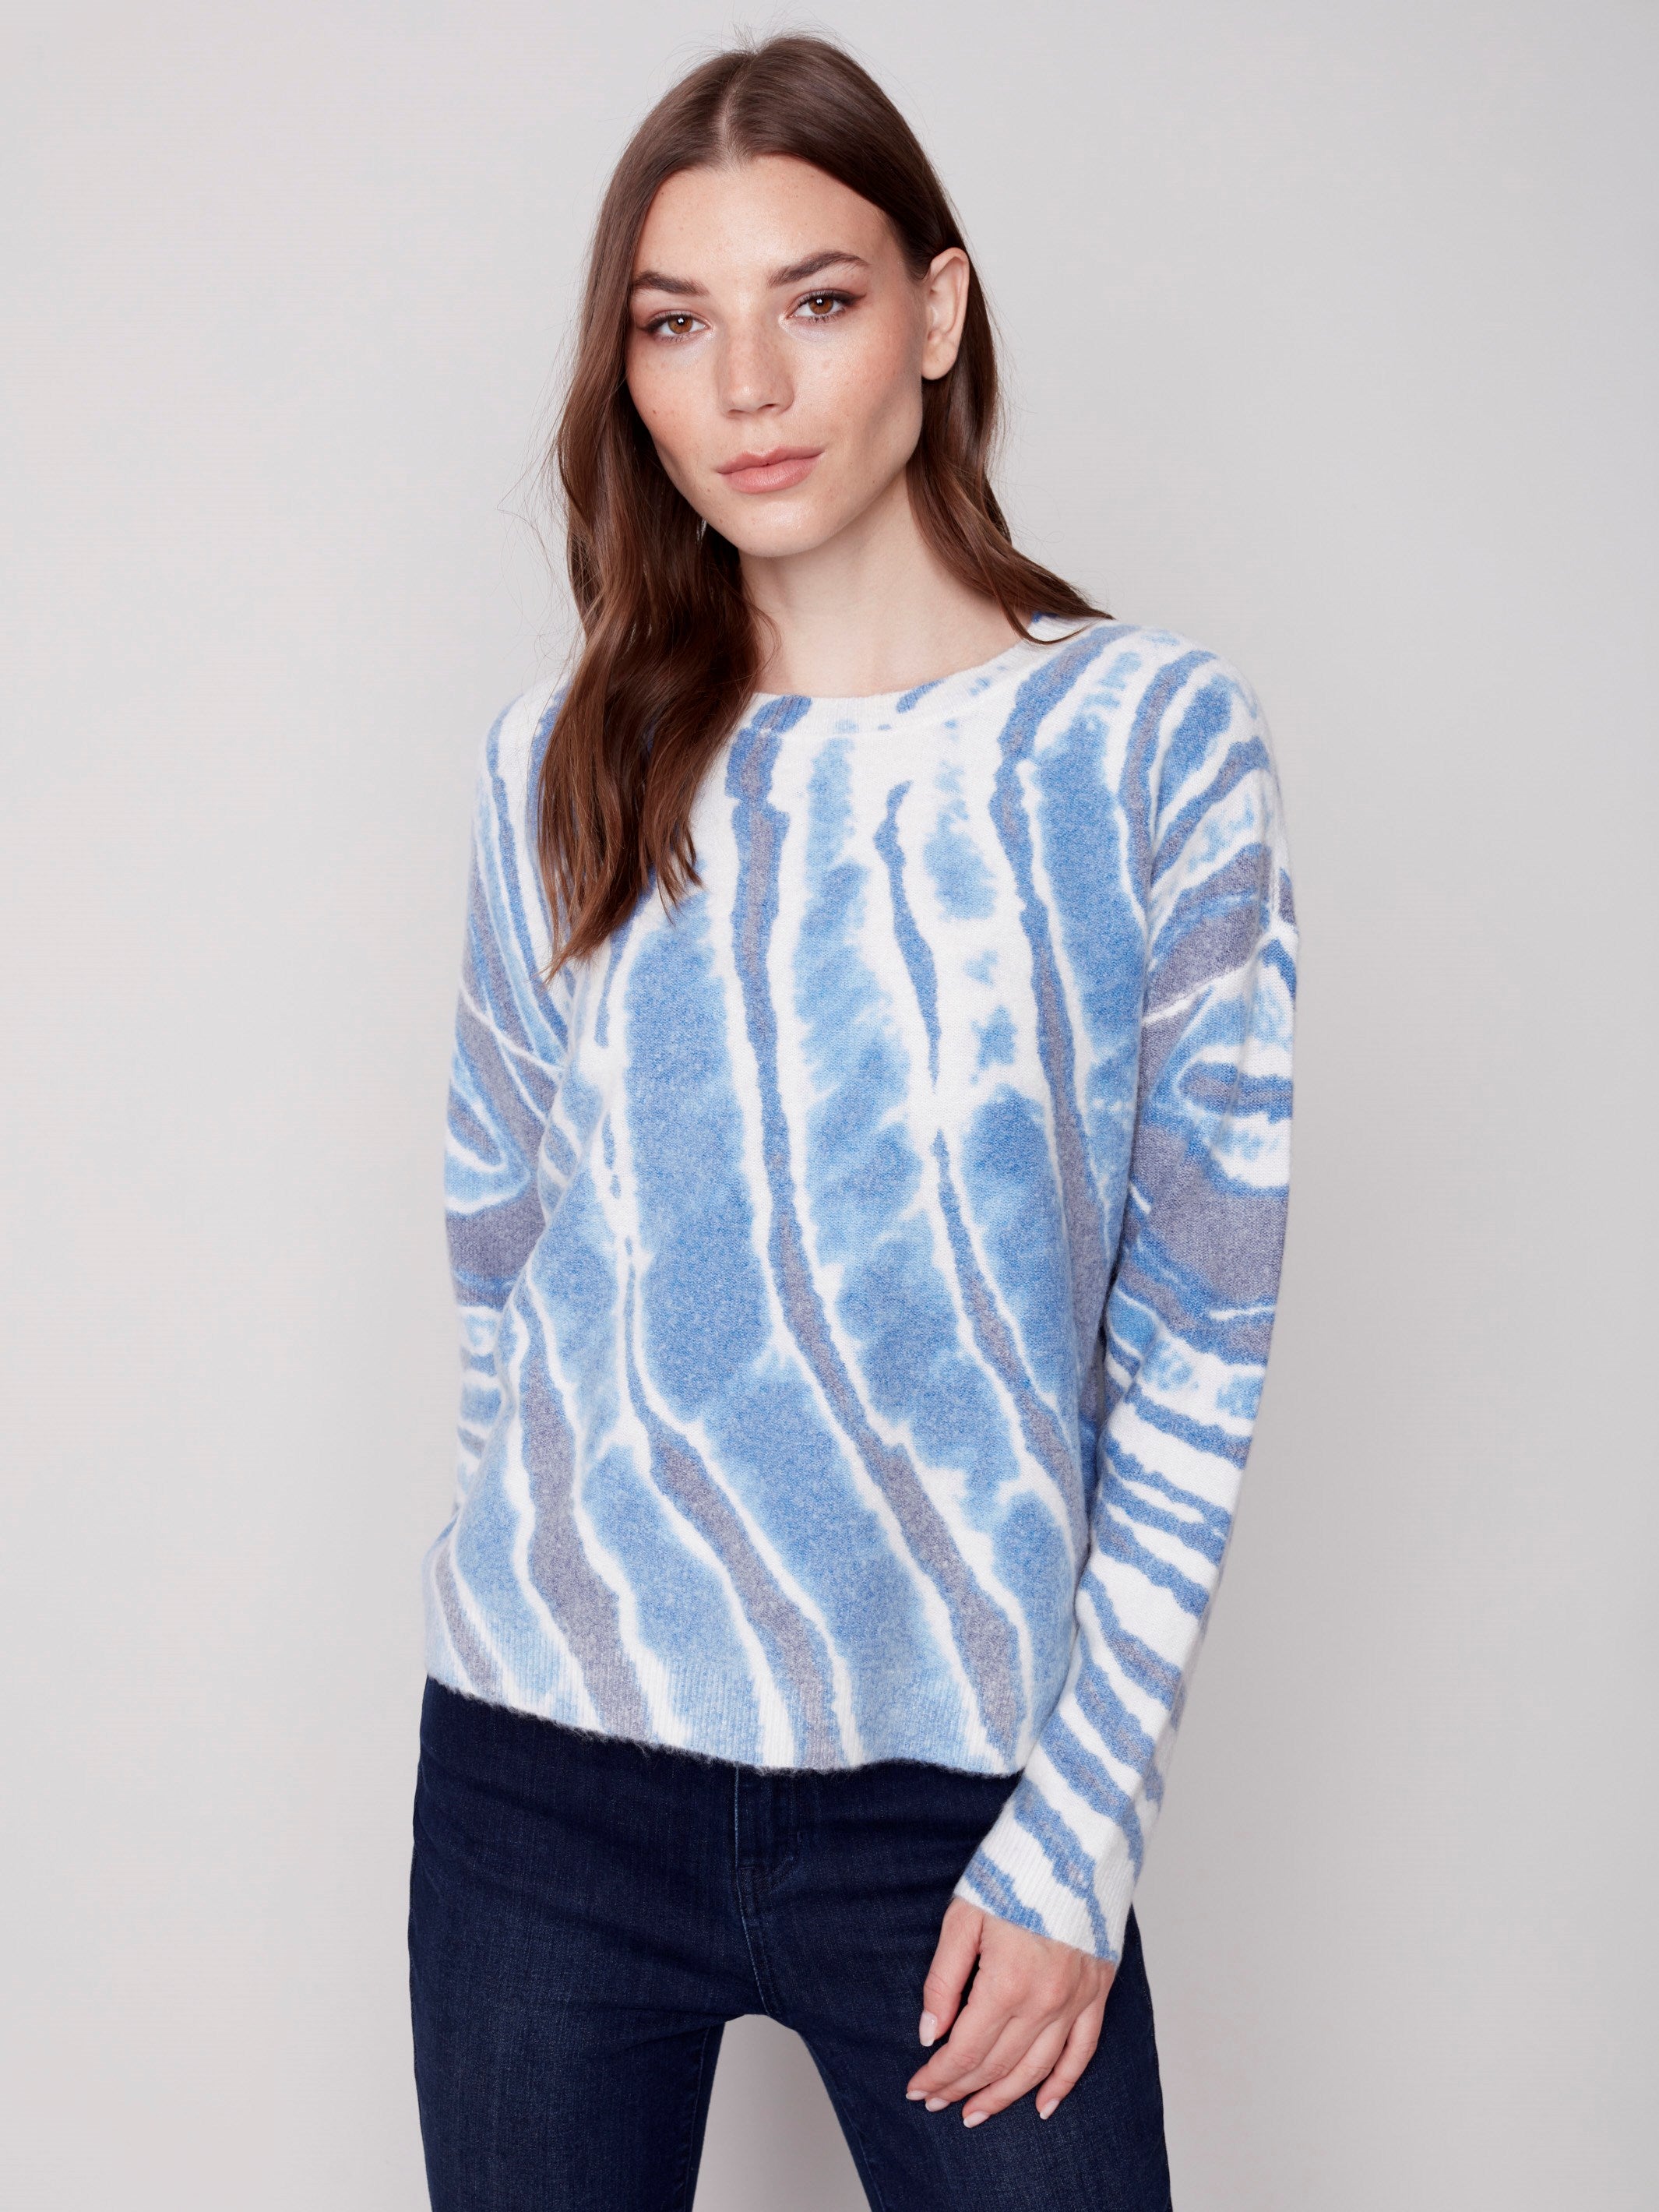 Reversible Printed Sweater - Denim